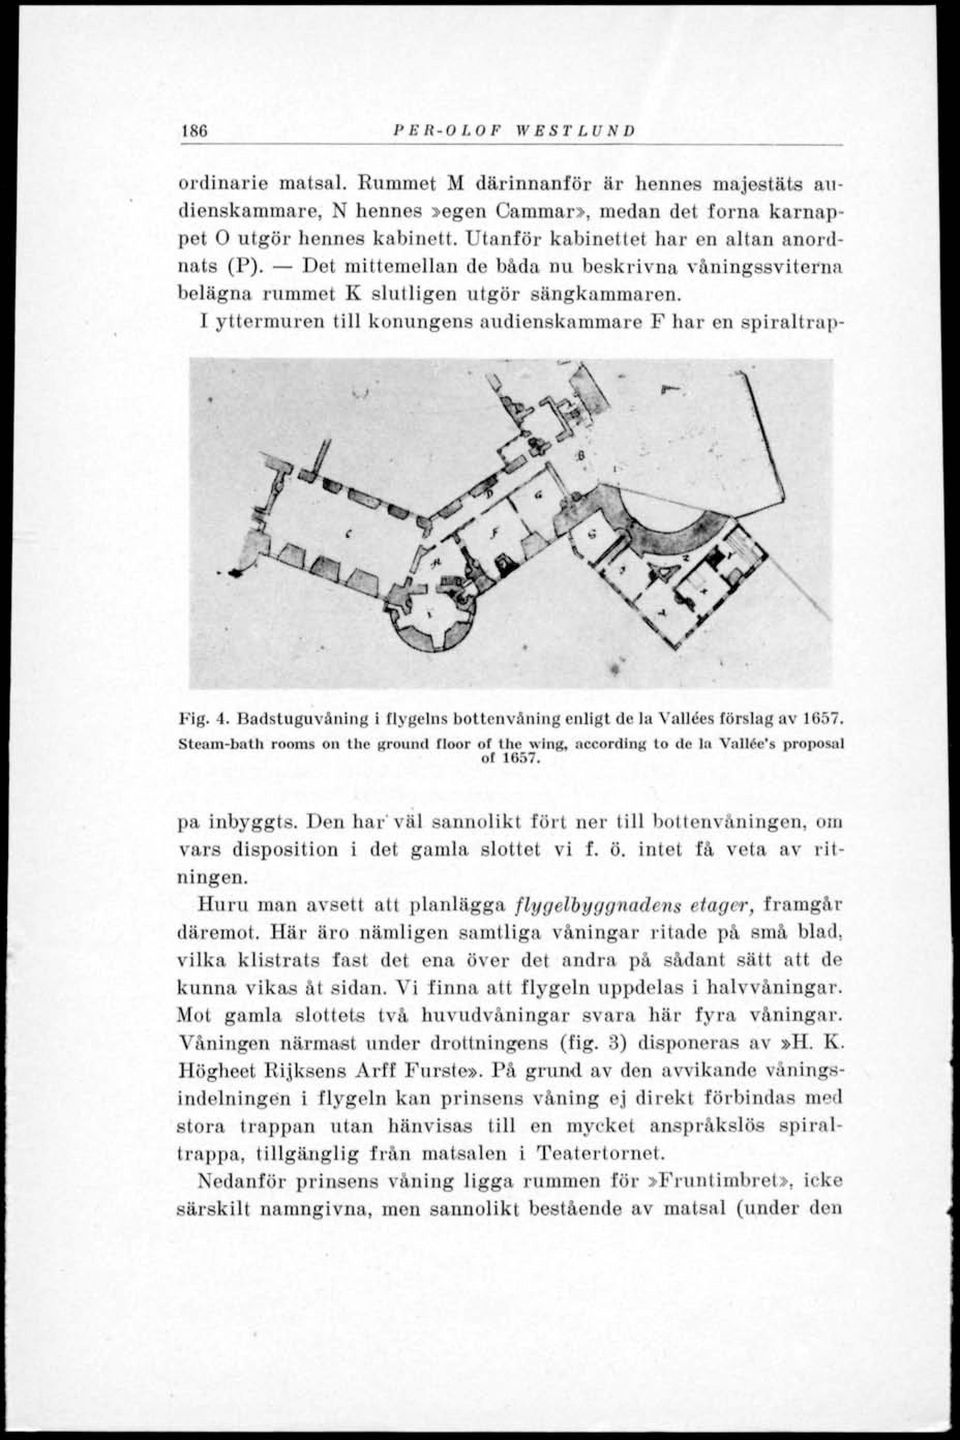 1 yttermuren till konungens audienskammare F har en spiraltrap- Fig. 4. Badstuguväning i flygelns bottenvåning enligt de la Vallées förslag av 1657.